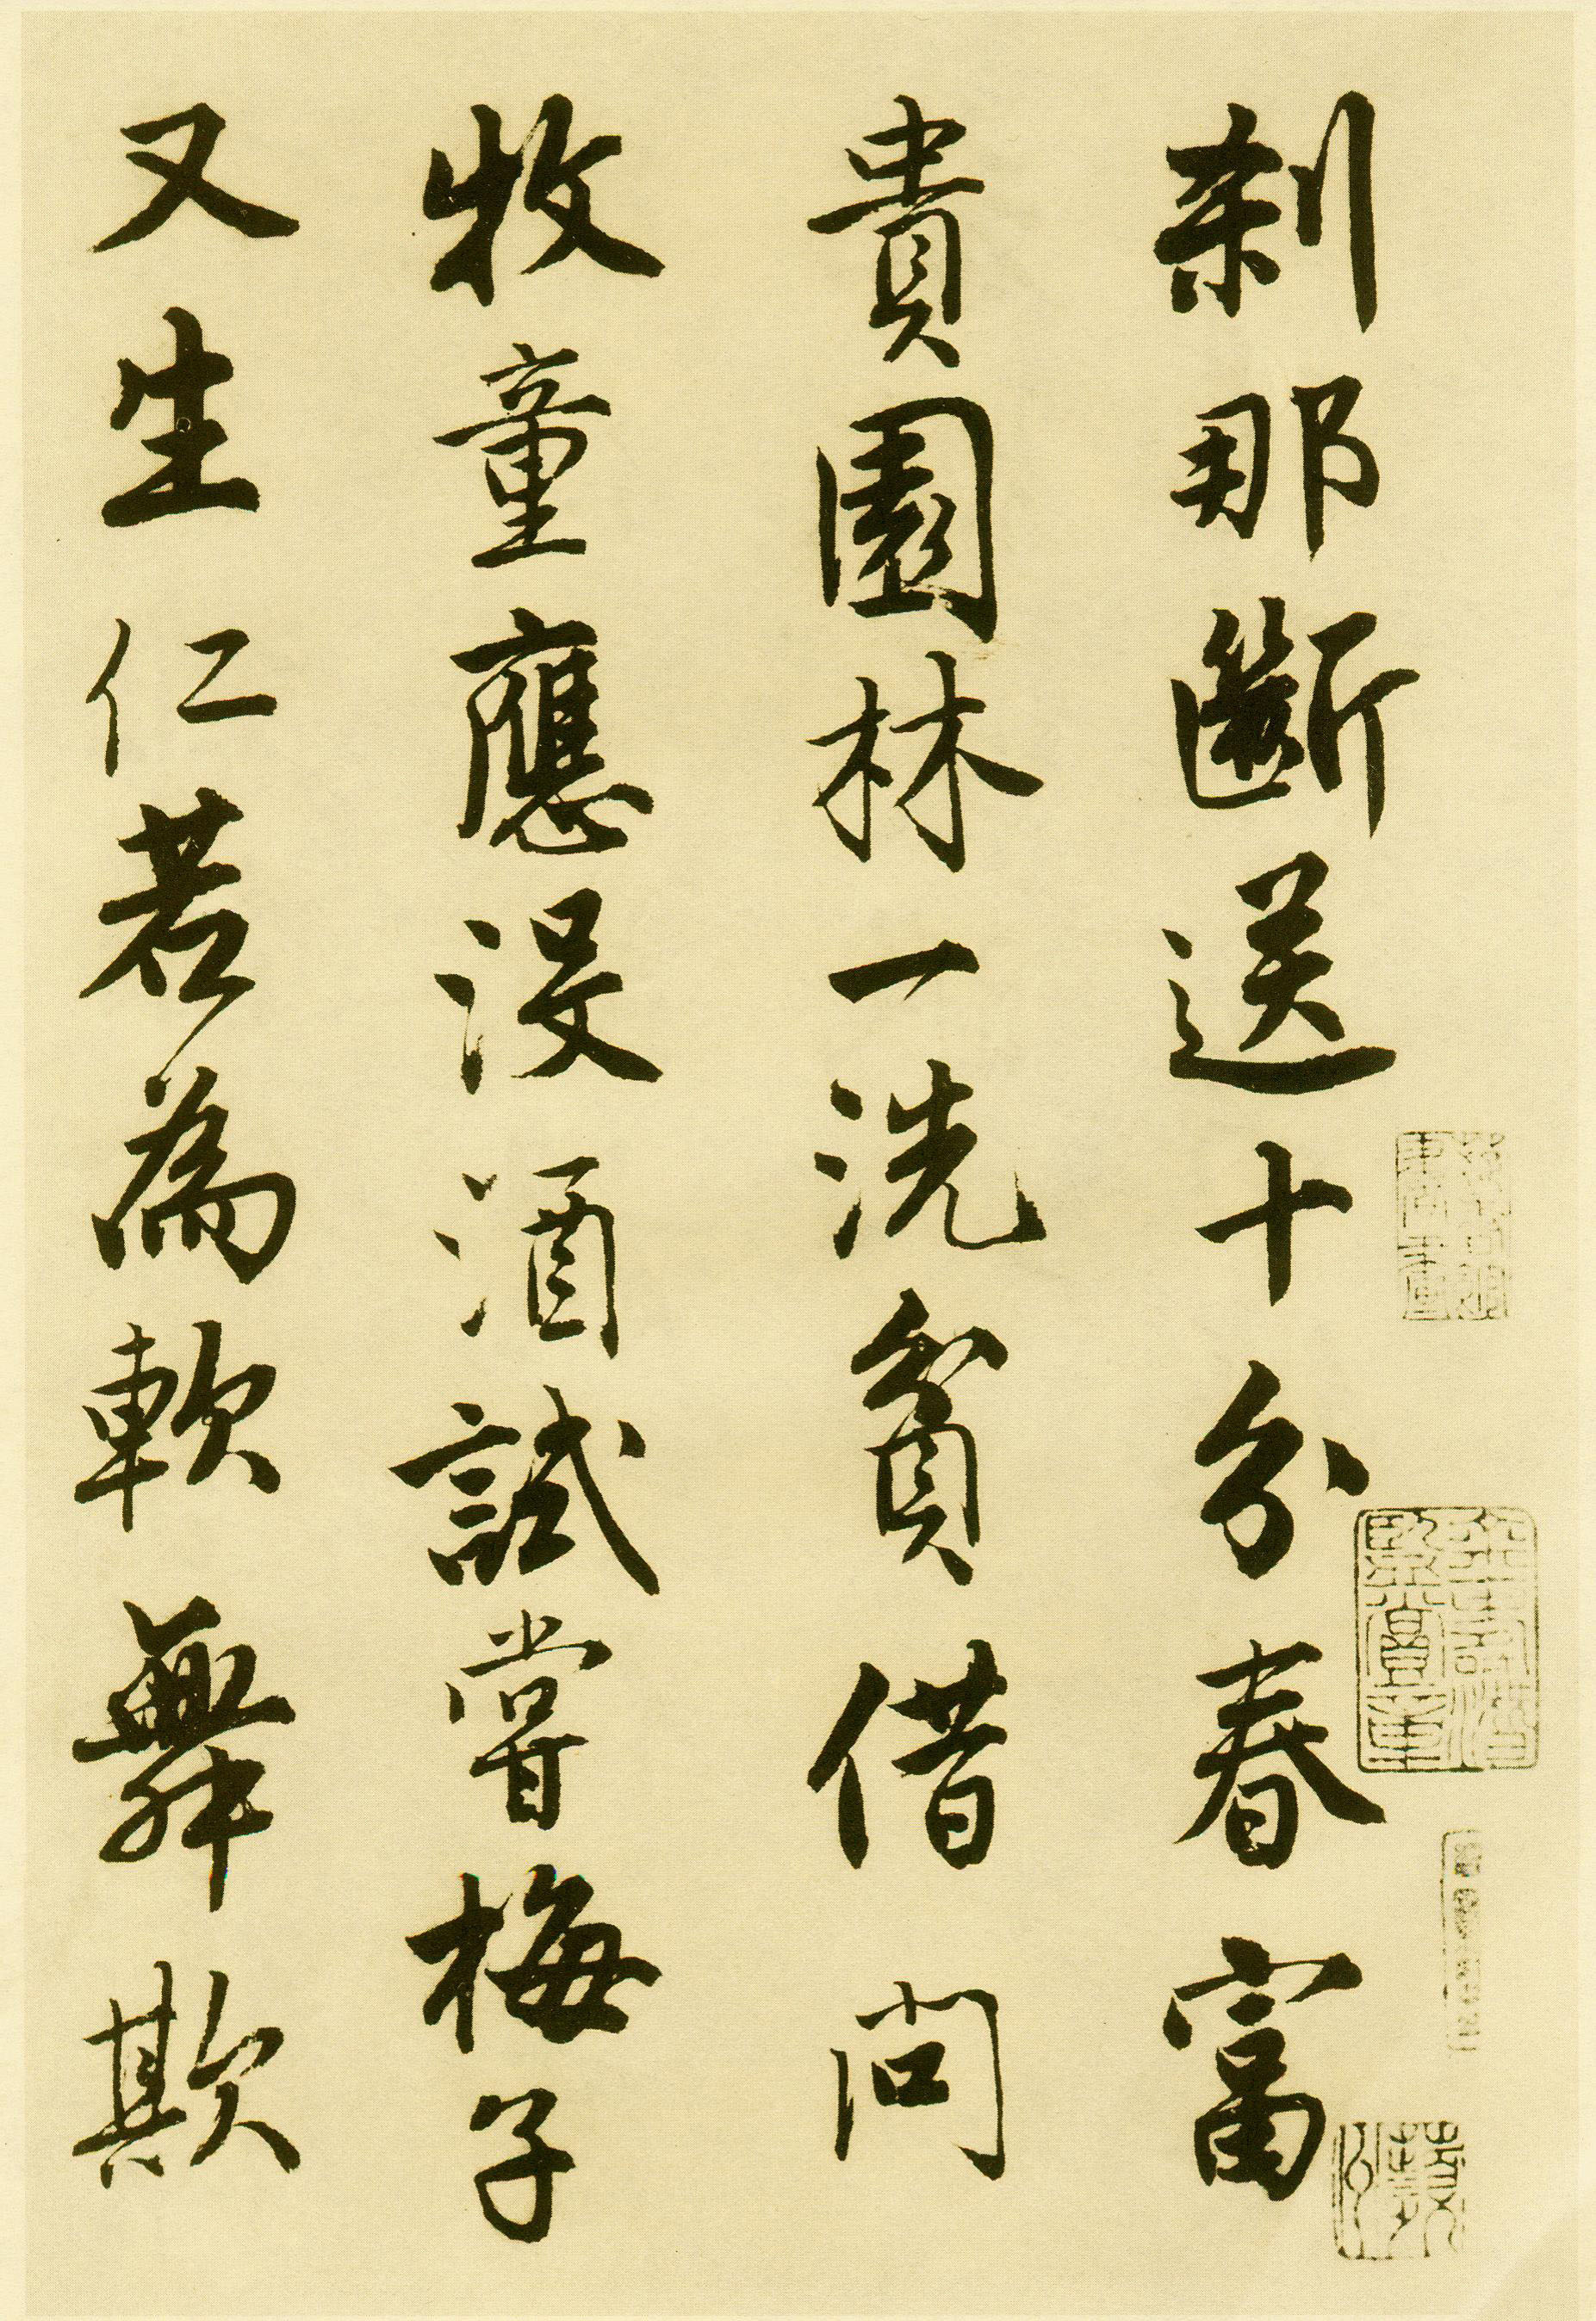 唐寅行书《落花诗册》(一)-苏州市博物馆藏(图1)